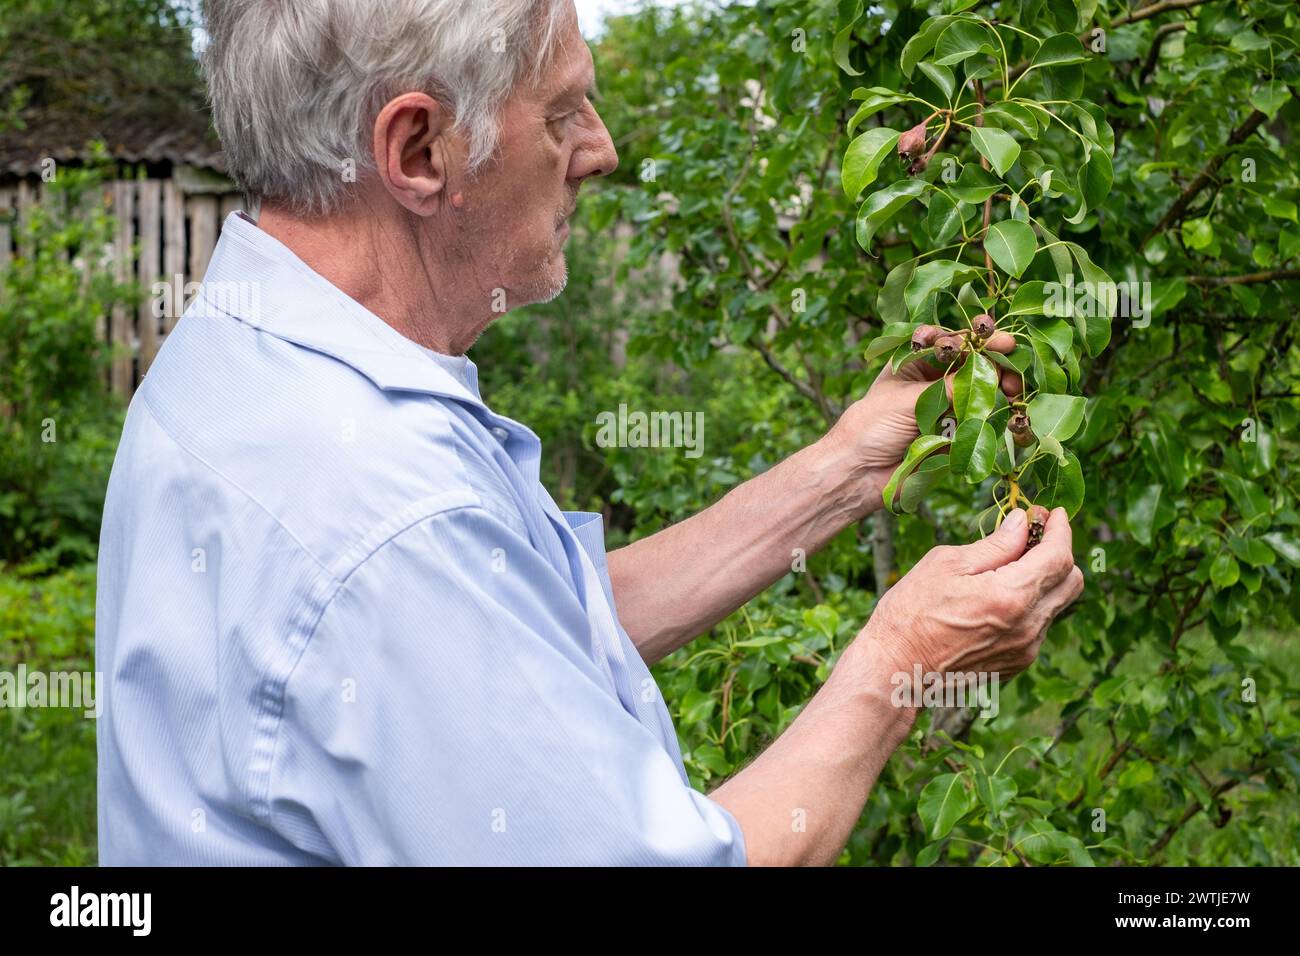 Hombre maduro inspeccionando la salud del árbol de pera en el patio trasero, capturando la esencia de la agricultura personal, ideal para discusiones sobre jardinería orgánica. Foto de stock